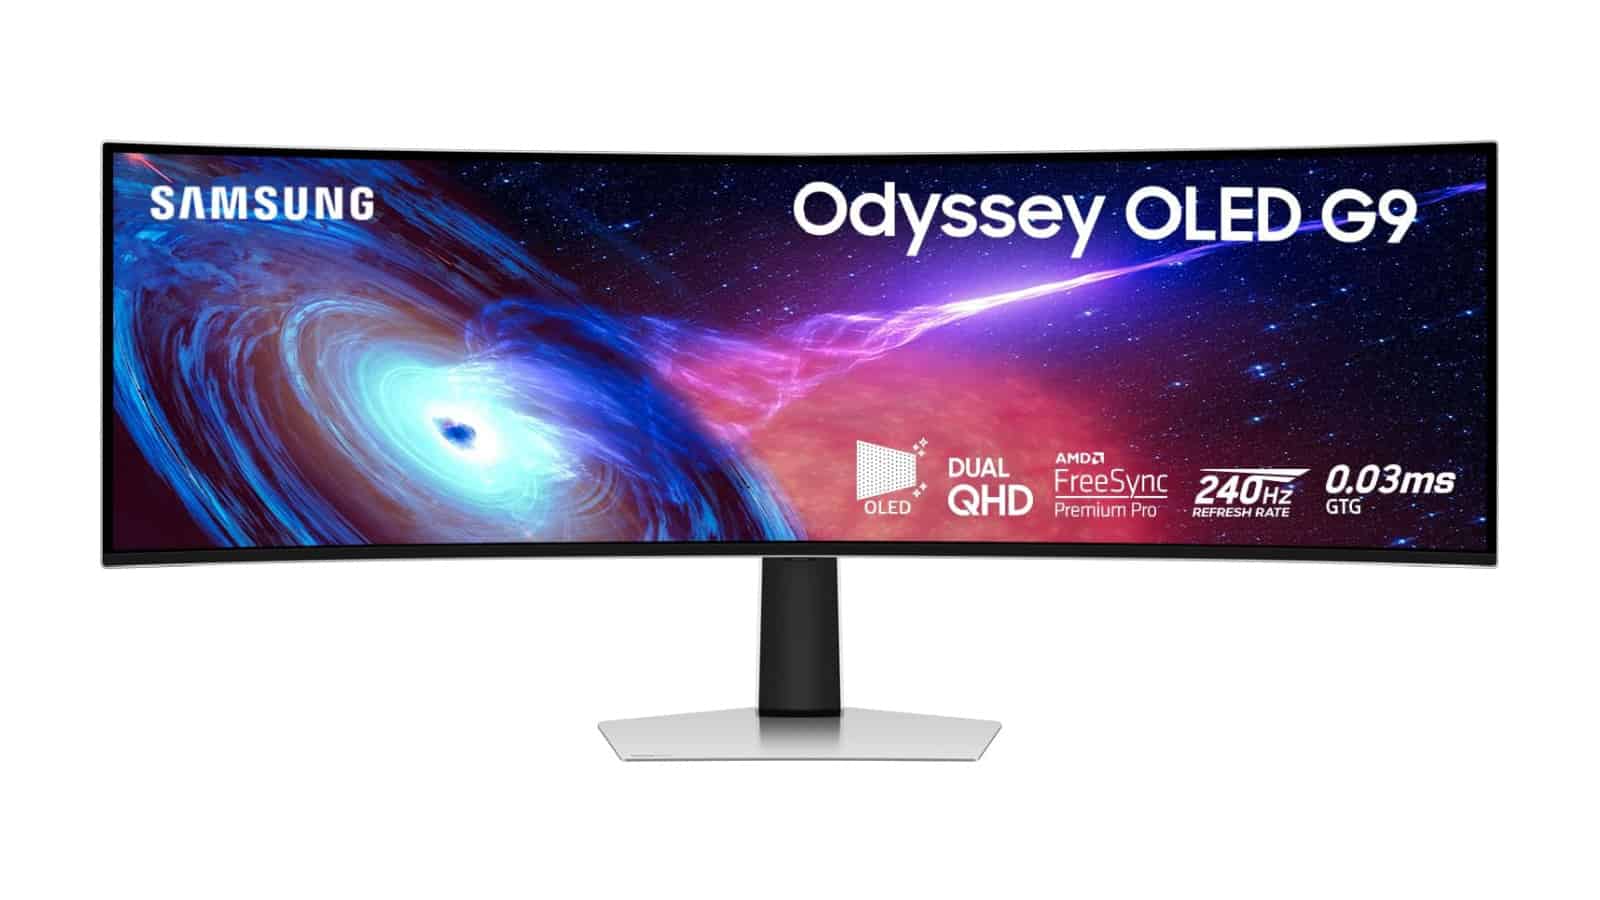 ¡No te pierdas la oferta del monitor de juegos Odyssey OLED G9 por $ 1,100!